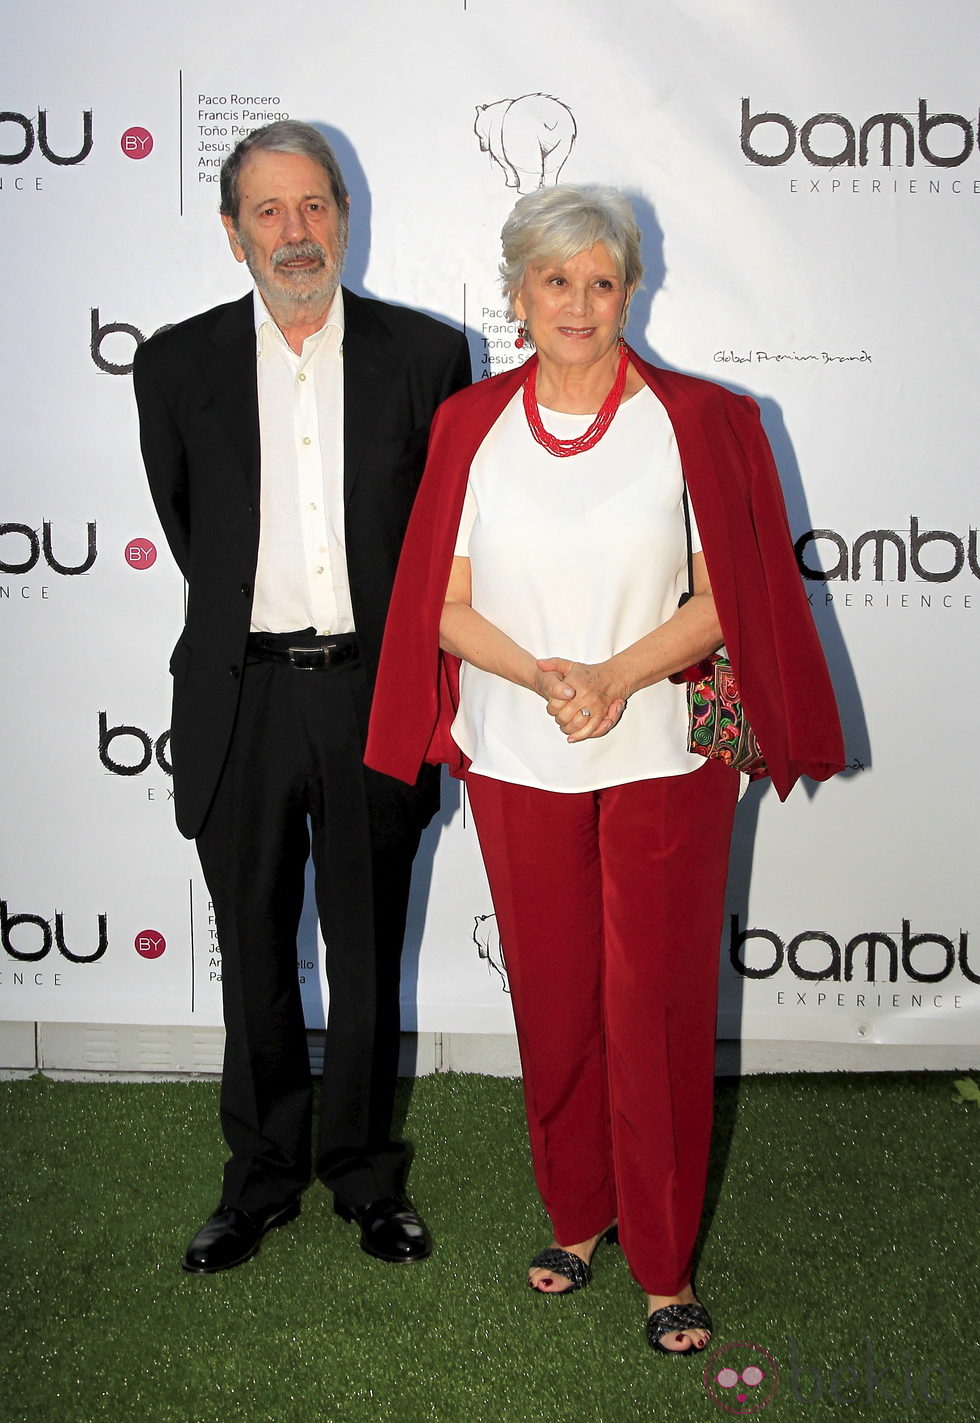 José Manuel Cervino y su mujer en la fiesta del quinto aniversario de Bambú